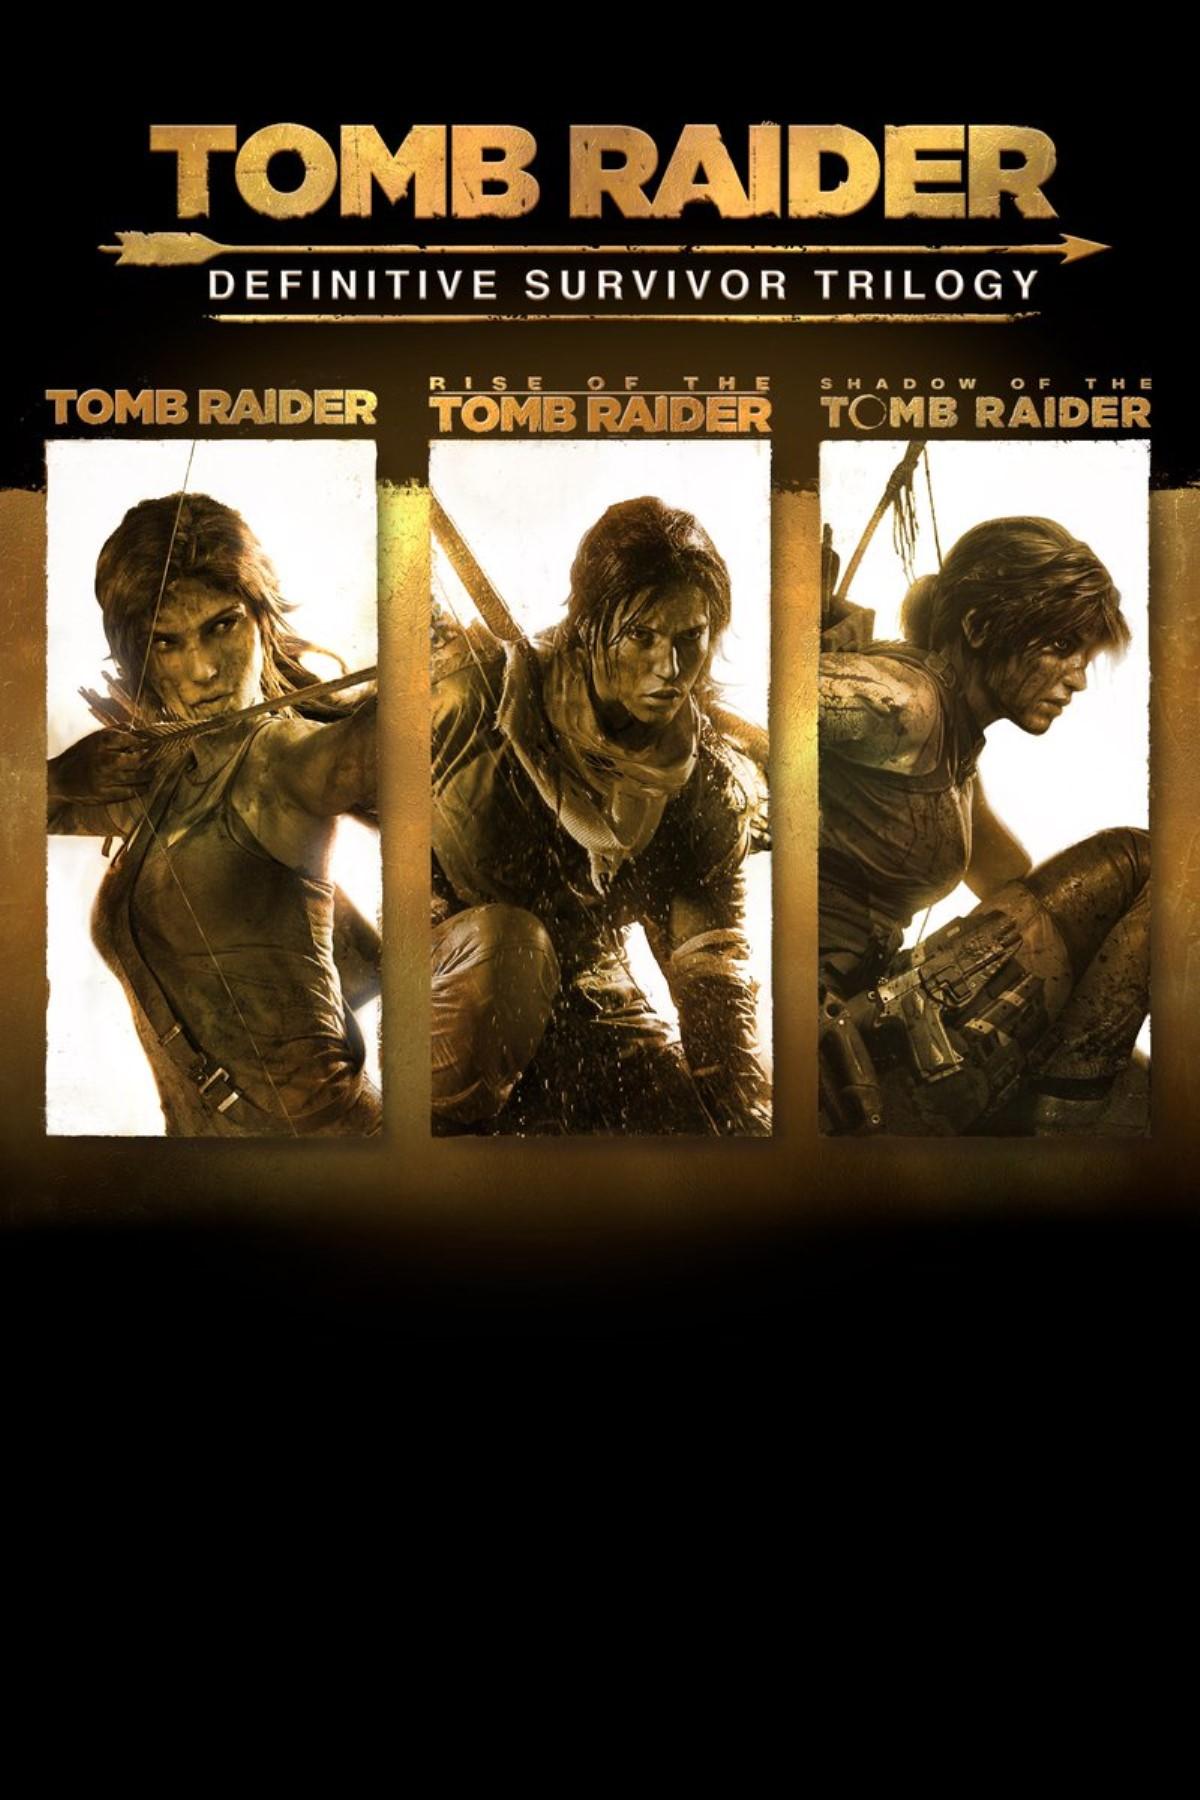 tomb raider survivor trilogy download